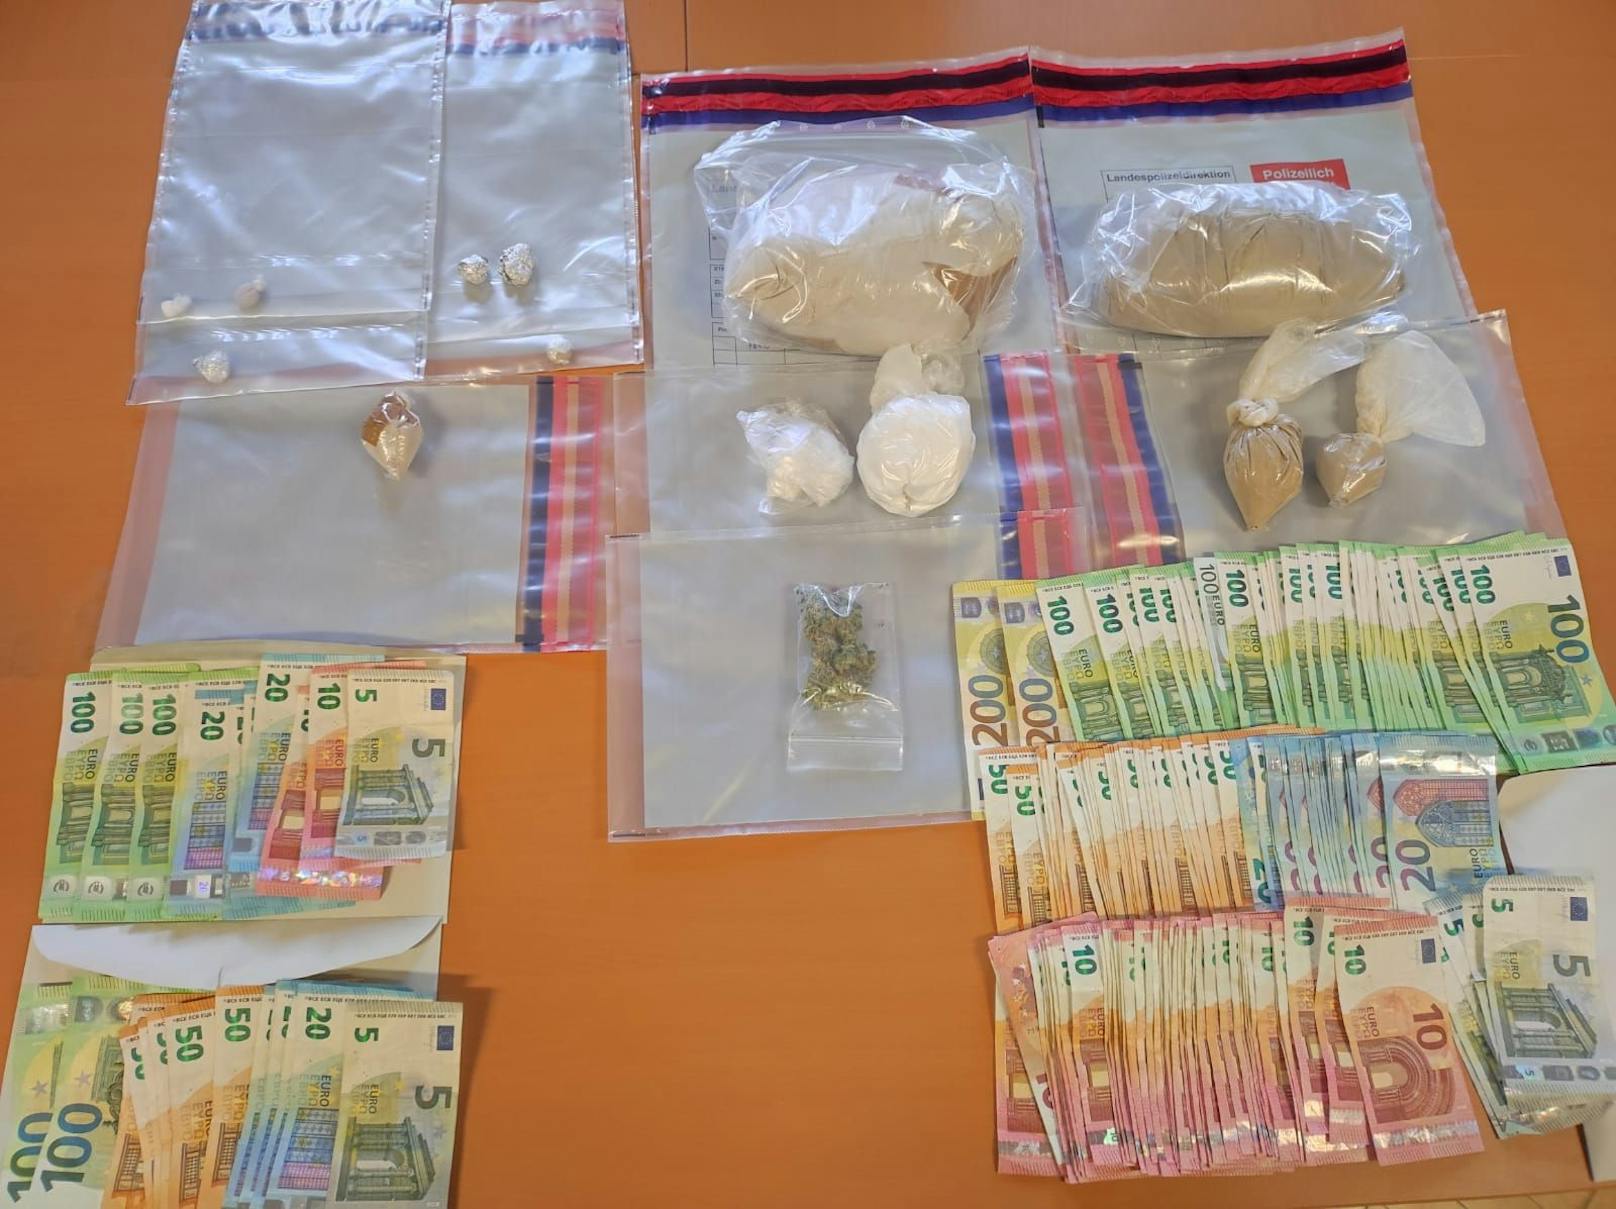 Bei Drogen-Razzien stellte die Polizei jede Menge Suchtgift und Bargeld sicher.